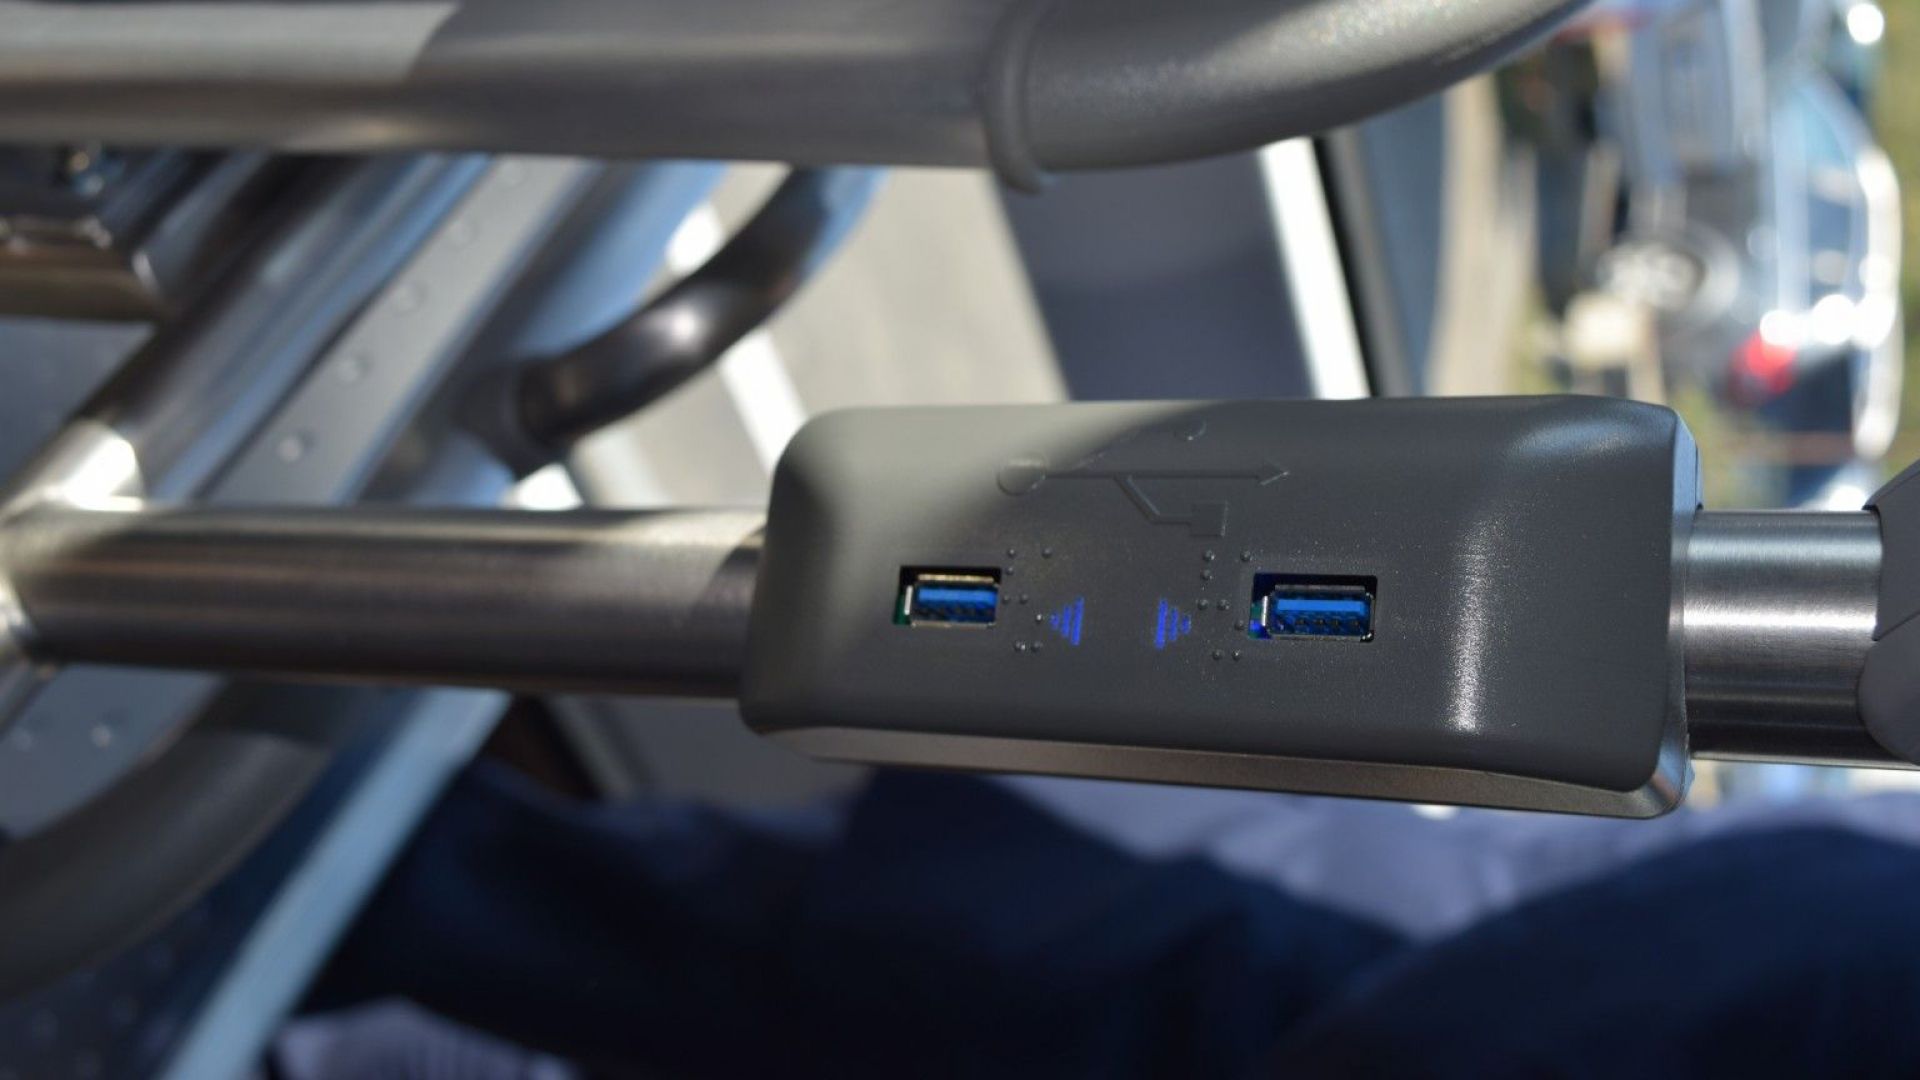  Друга оригиналност е съществуването на USB портове за зареждане на персонални мобилни апарати в пътническия салон 